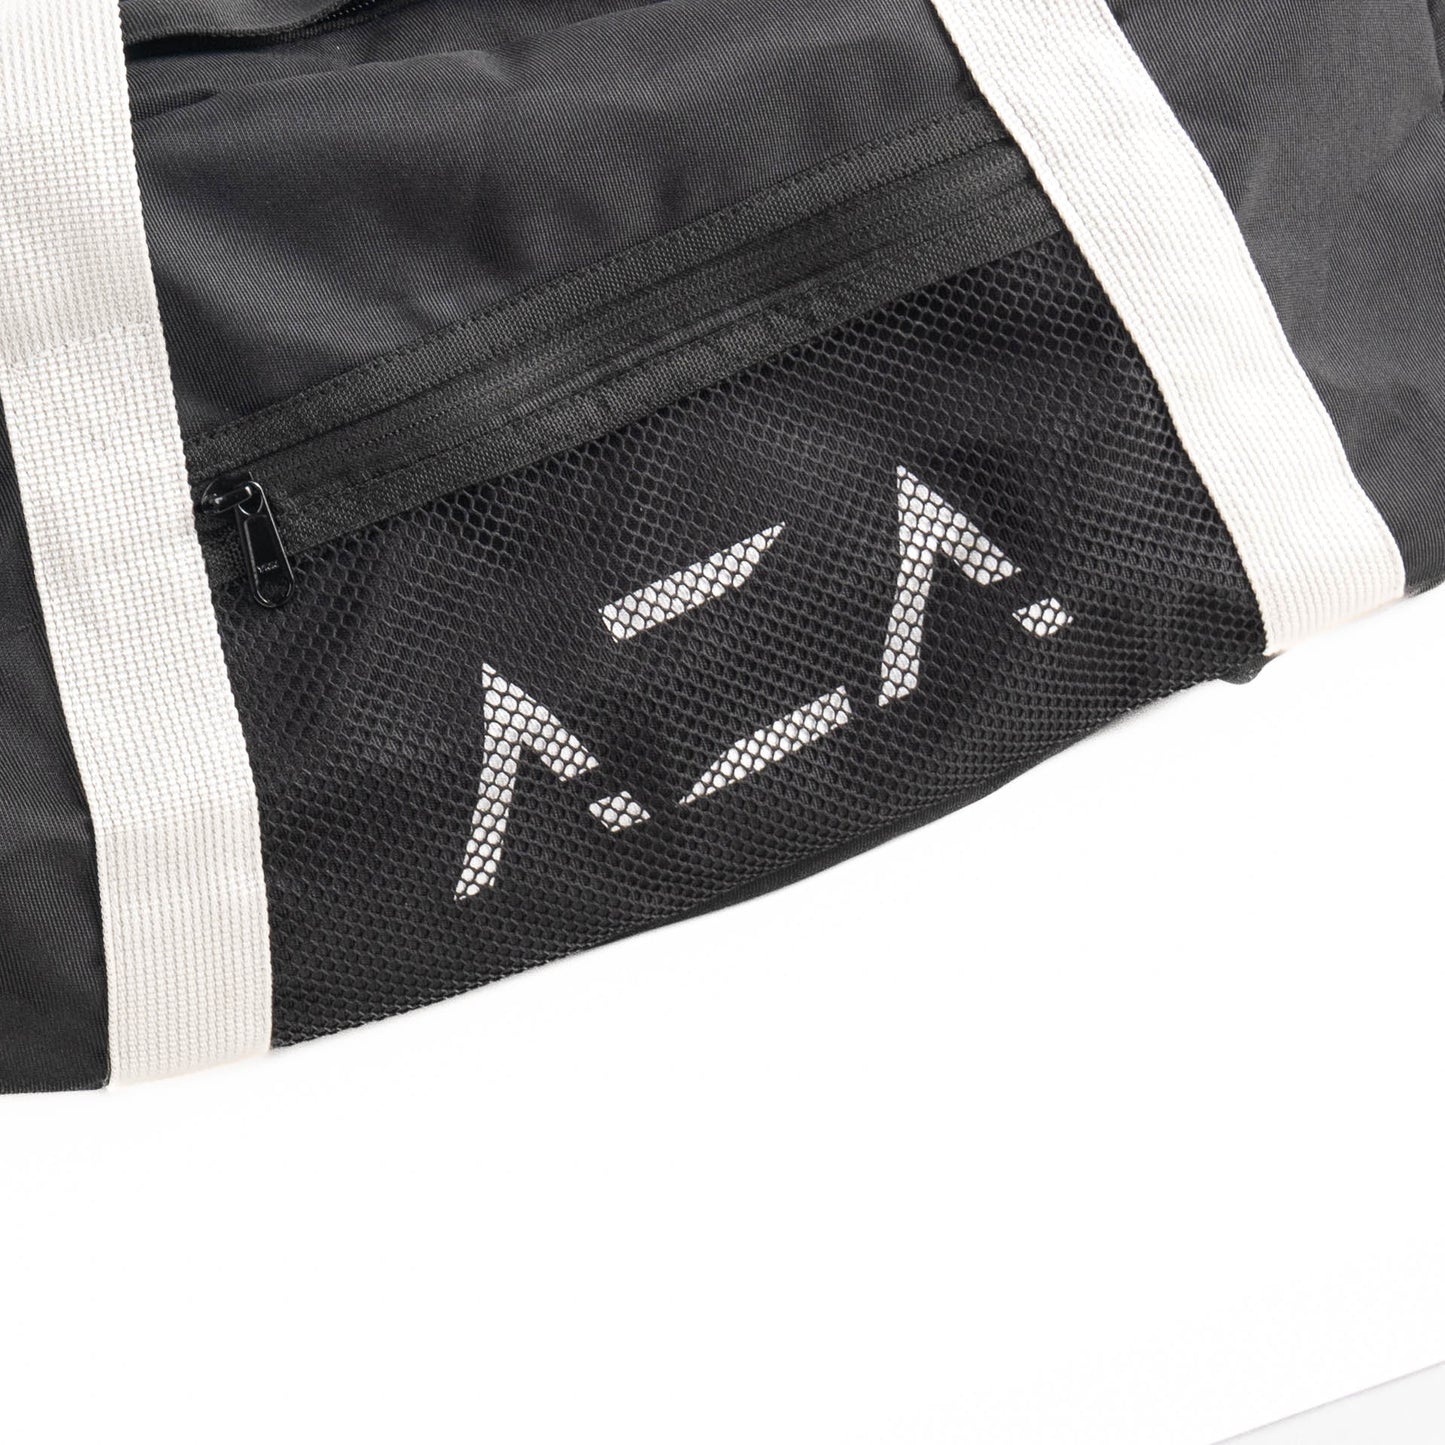 AZA Multifunction Gymbag - Black / Grey